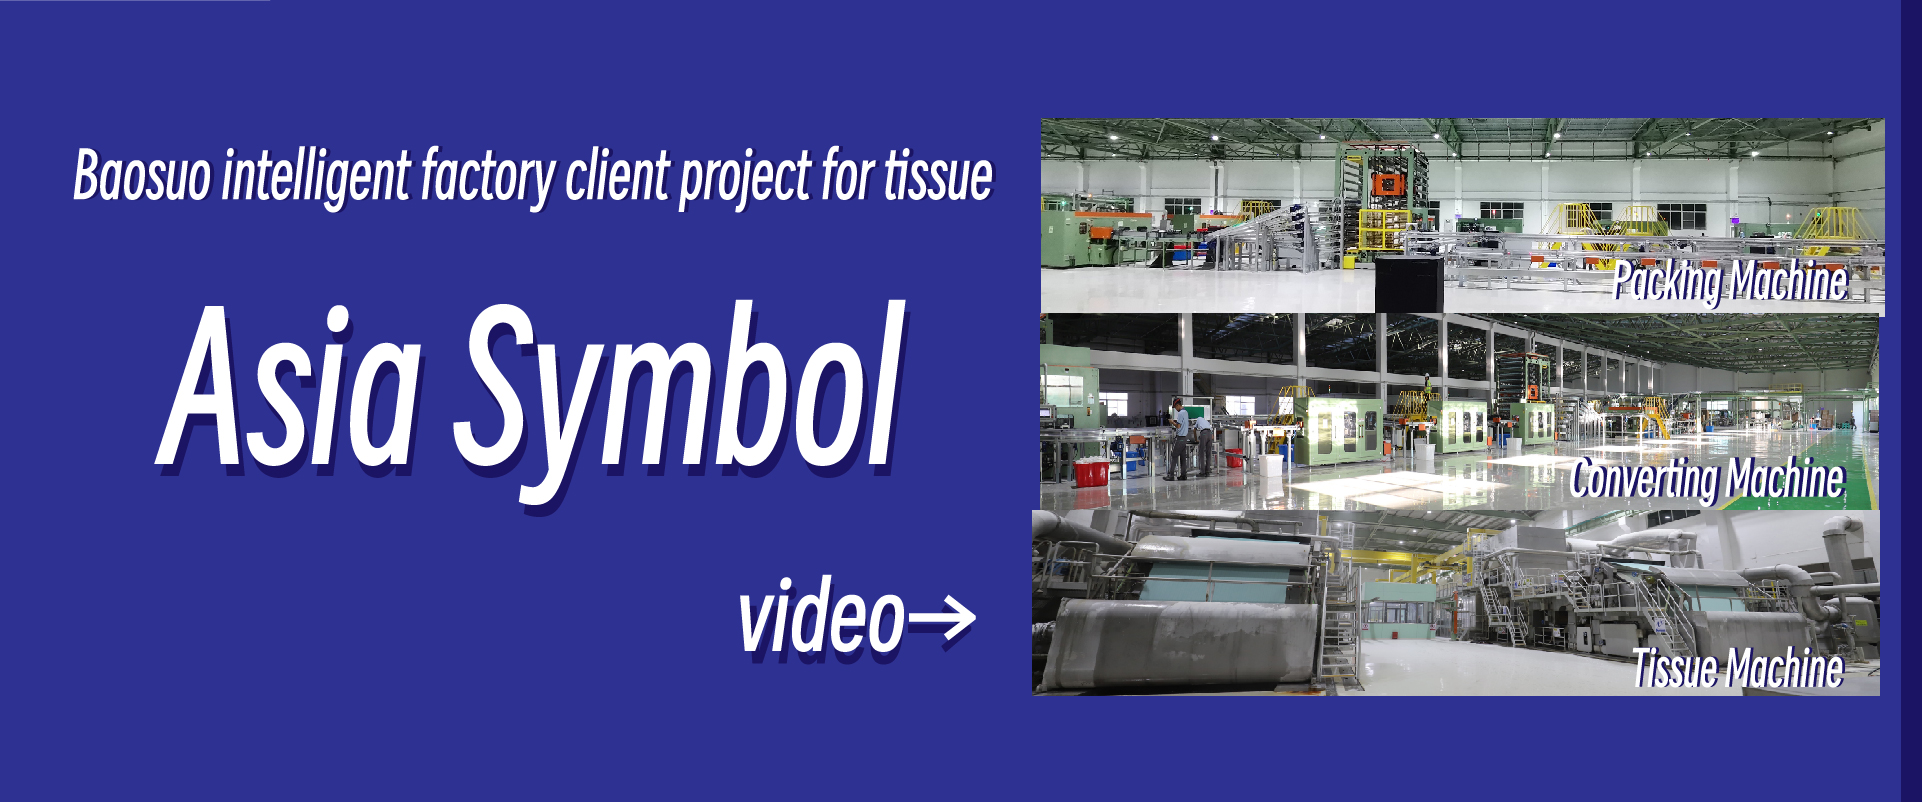 Proyecto de cliente de fábrica inteligente de Baosuo para tejido —— Símbolo de Asia